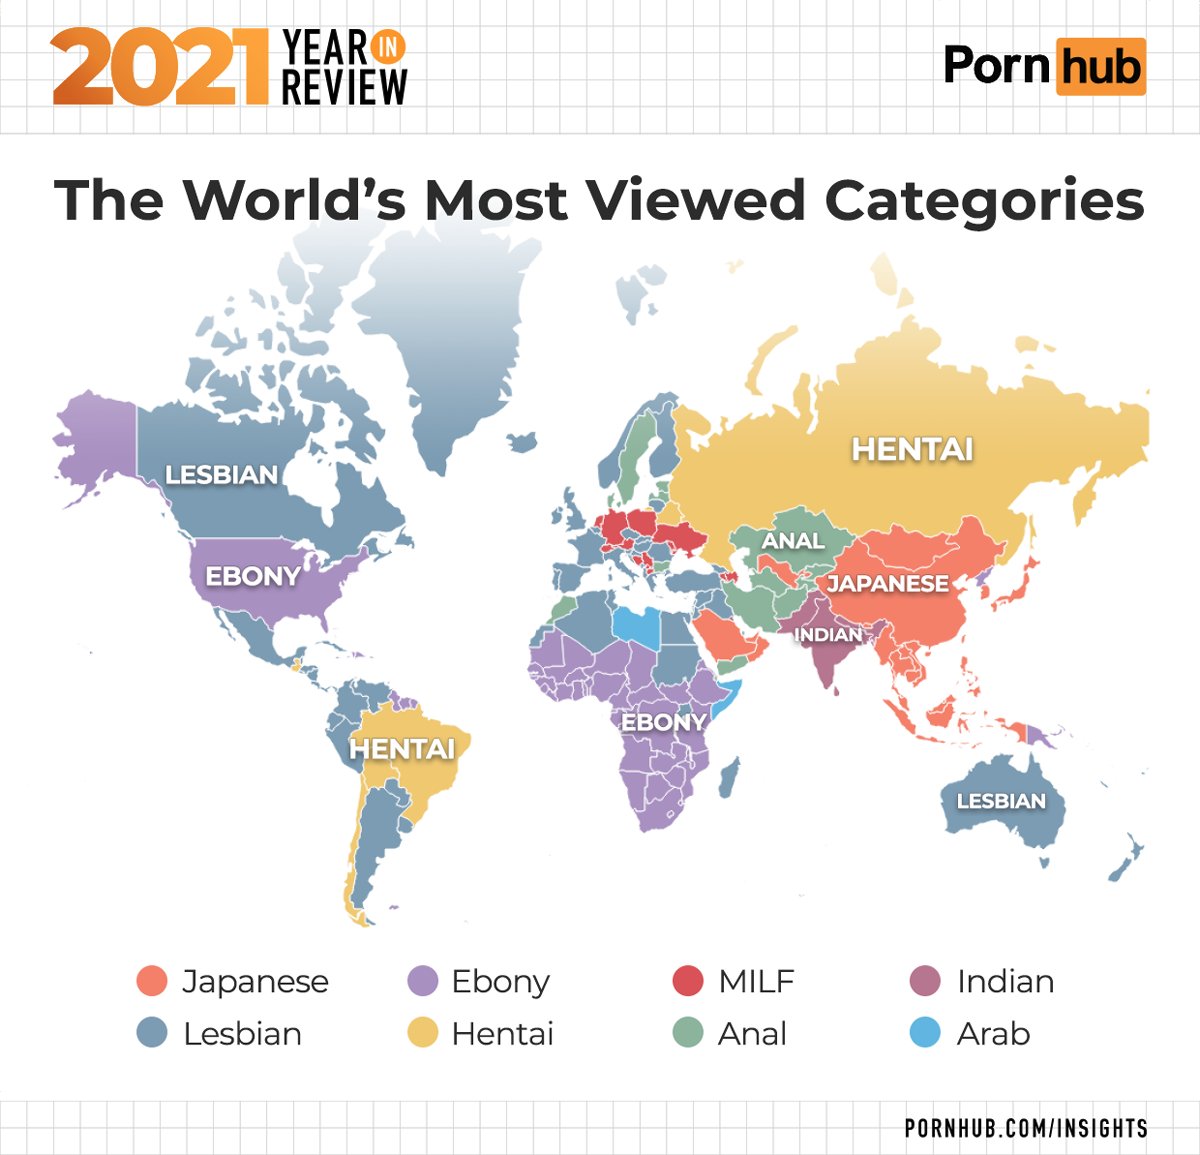 Pornhubのレポートでも明らかな通り「ポルノコンテンツは地域性が高い」のです。もしインターネット上のエロコンテンツがマンガやアニメなどに満ちているようにみえるのならば、それはあなたがアジア人であって検索に日本語を私用しているからです。欧米人はさほど日本のエロを目にしていません。 